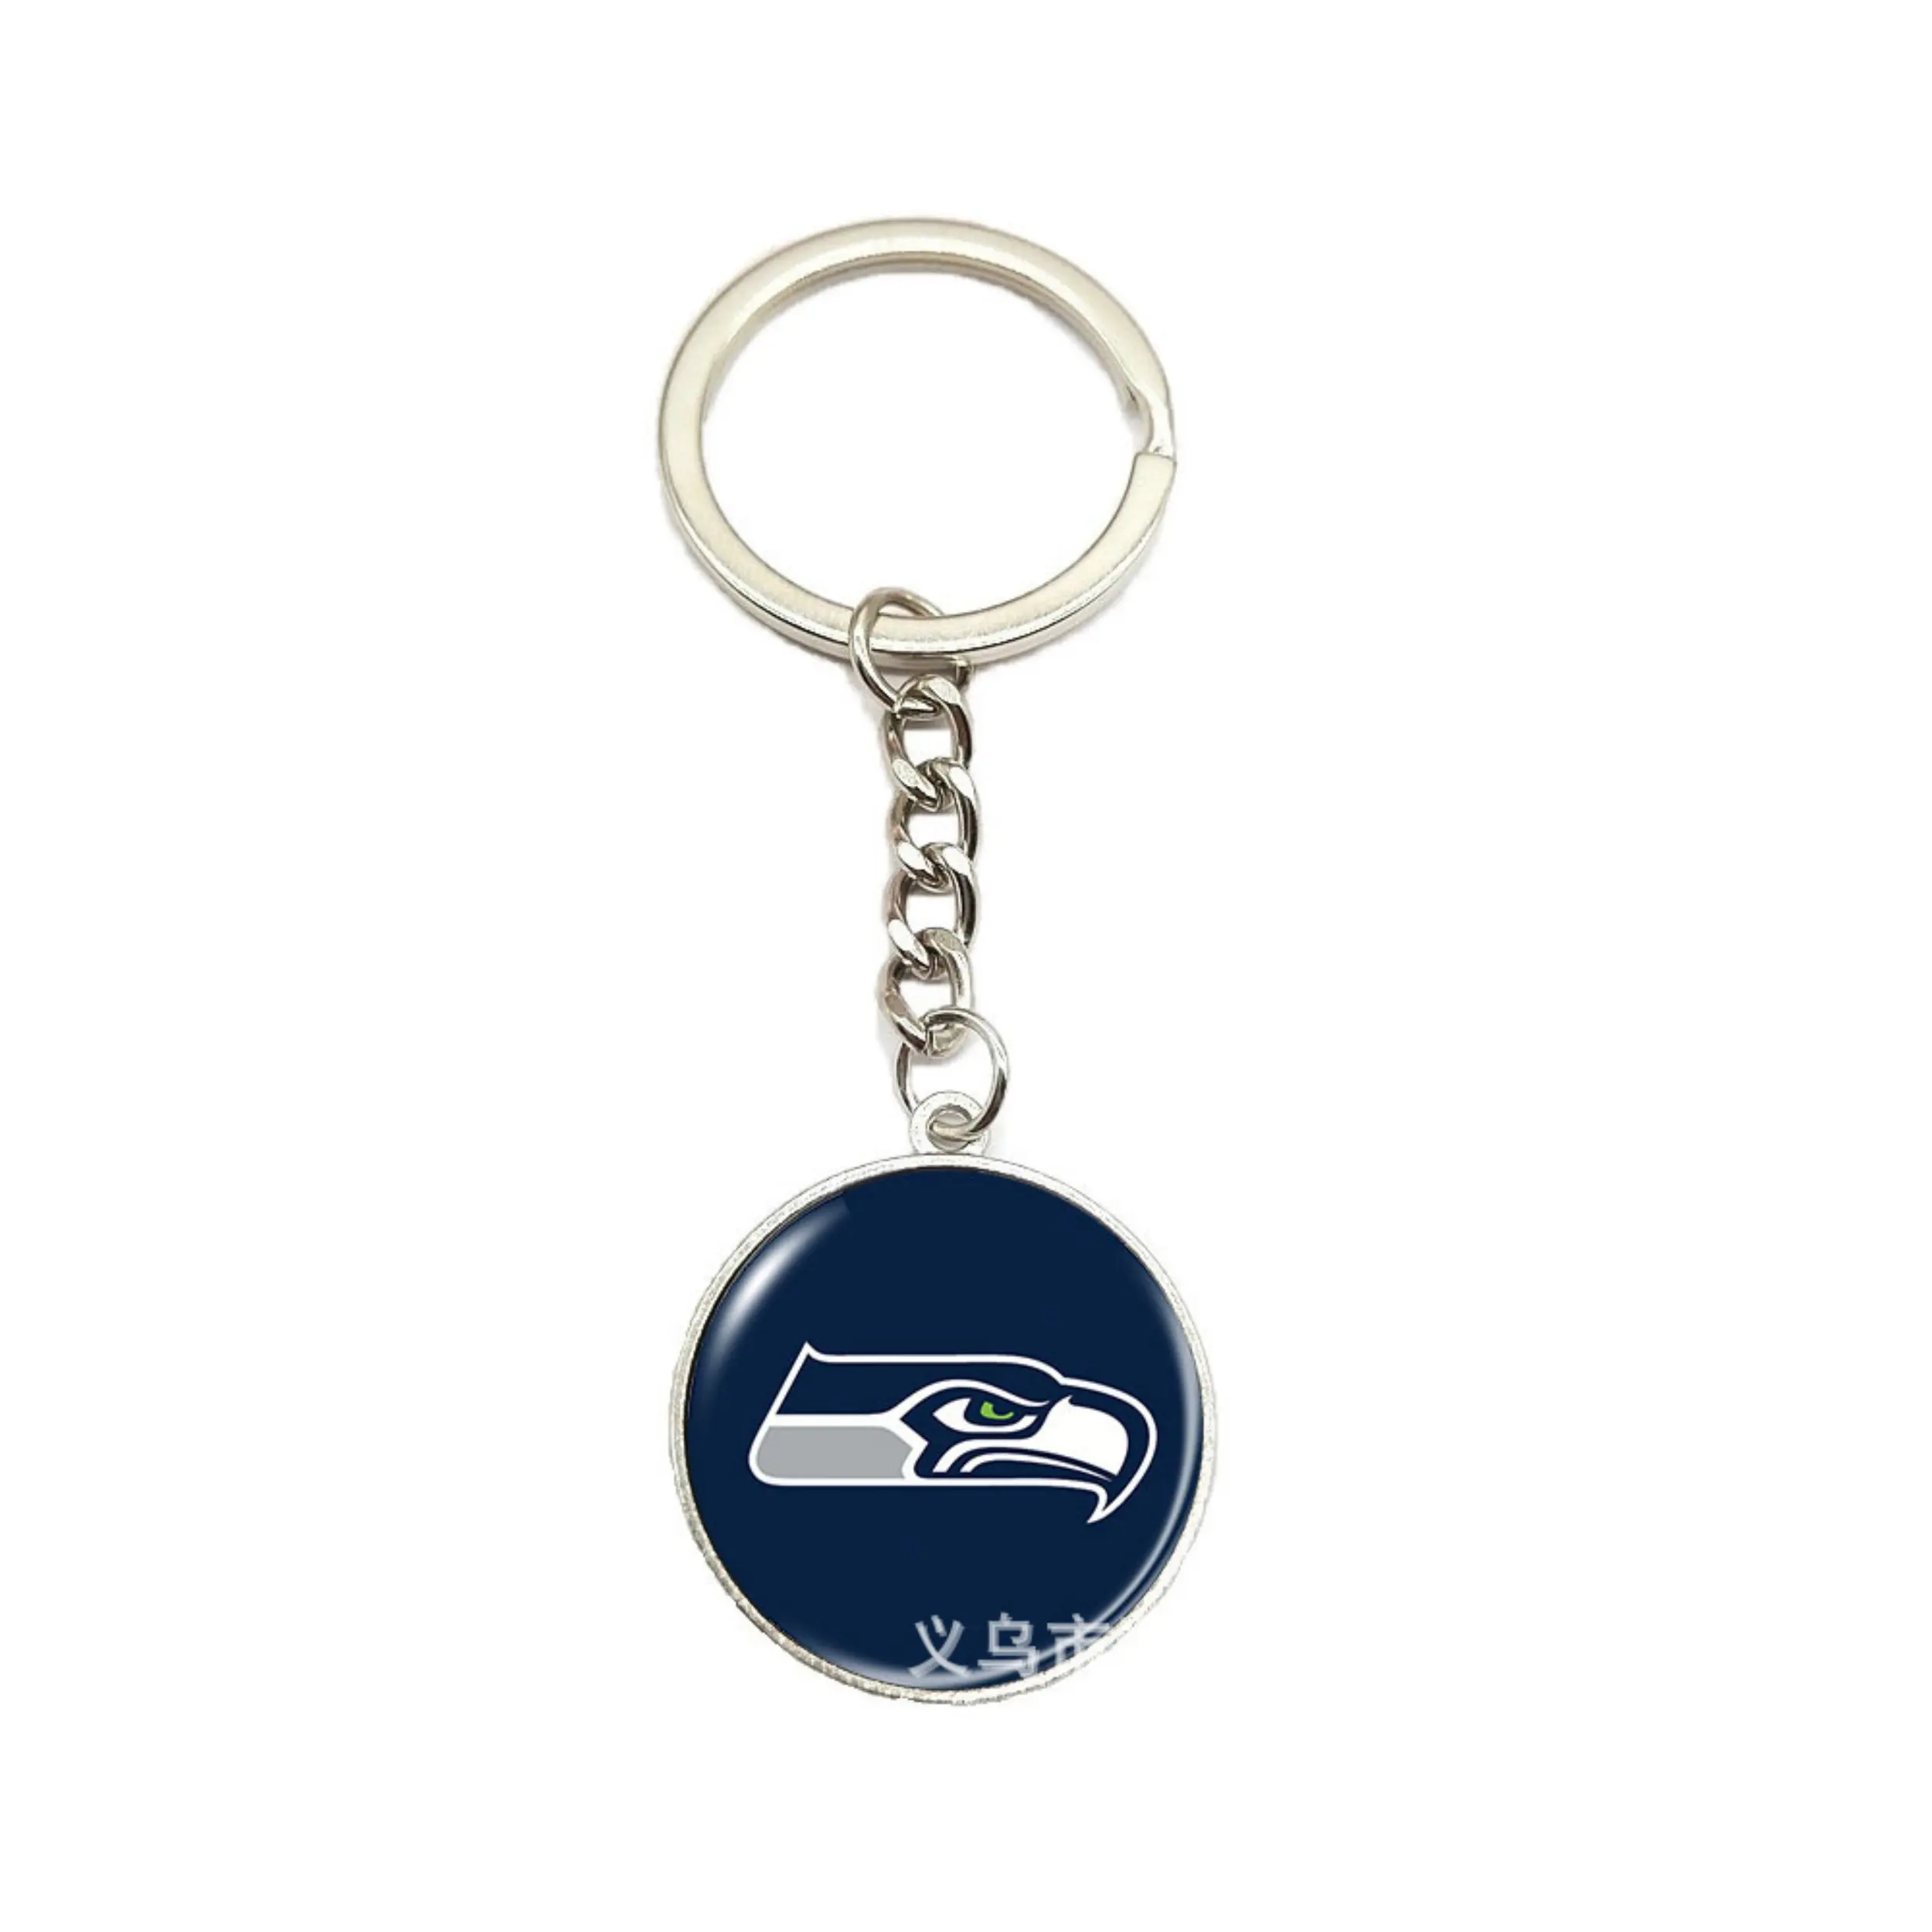 Seattle seaseasınır ötesi aksesuarlar amerikan futbolu takımı logo zaman gem çanta anahtarlığı araba anahtarı kolye